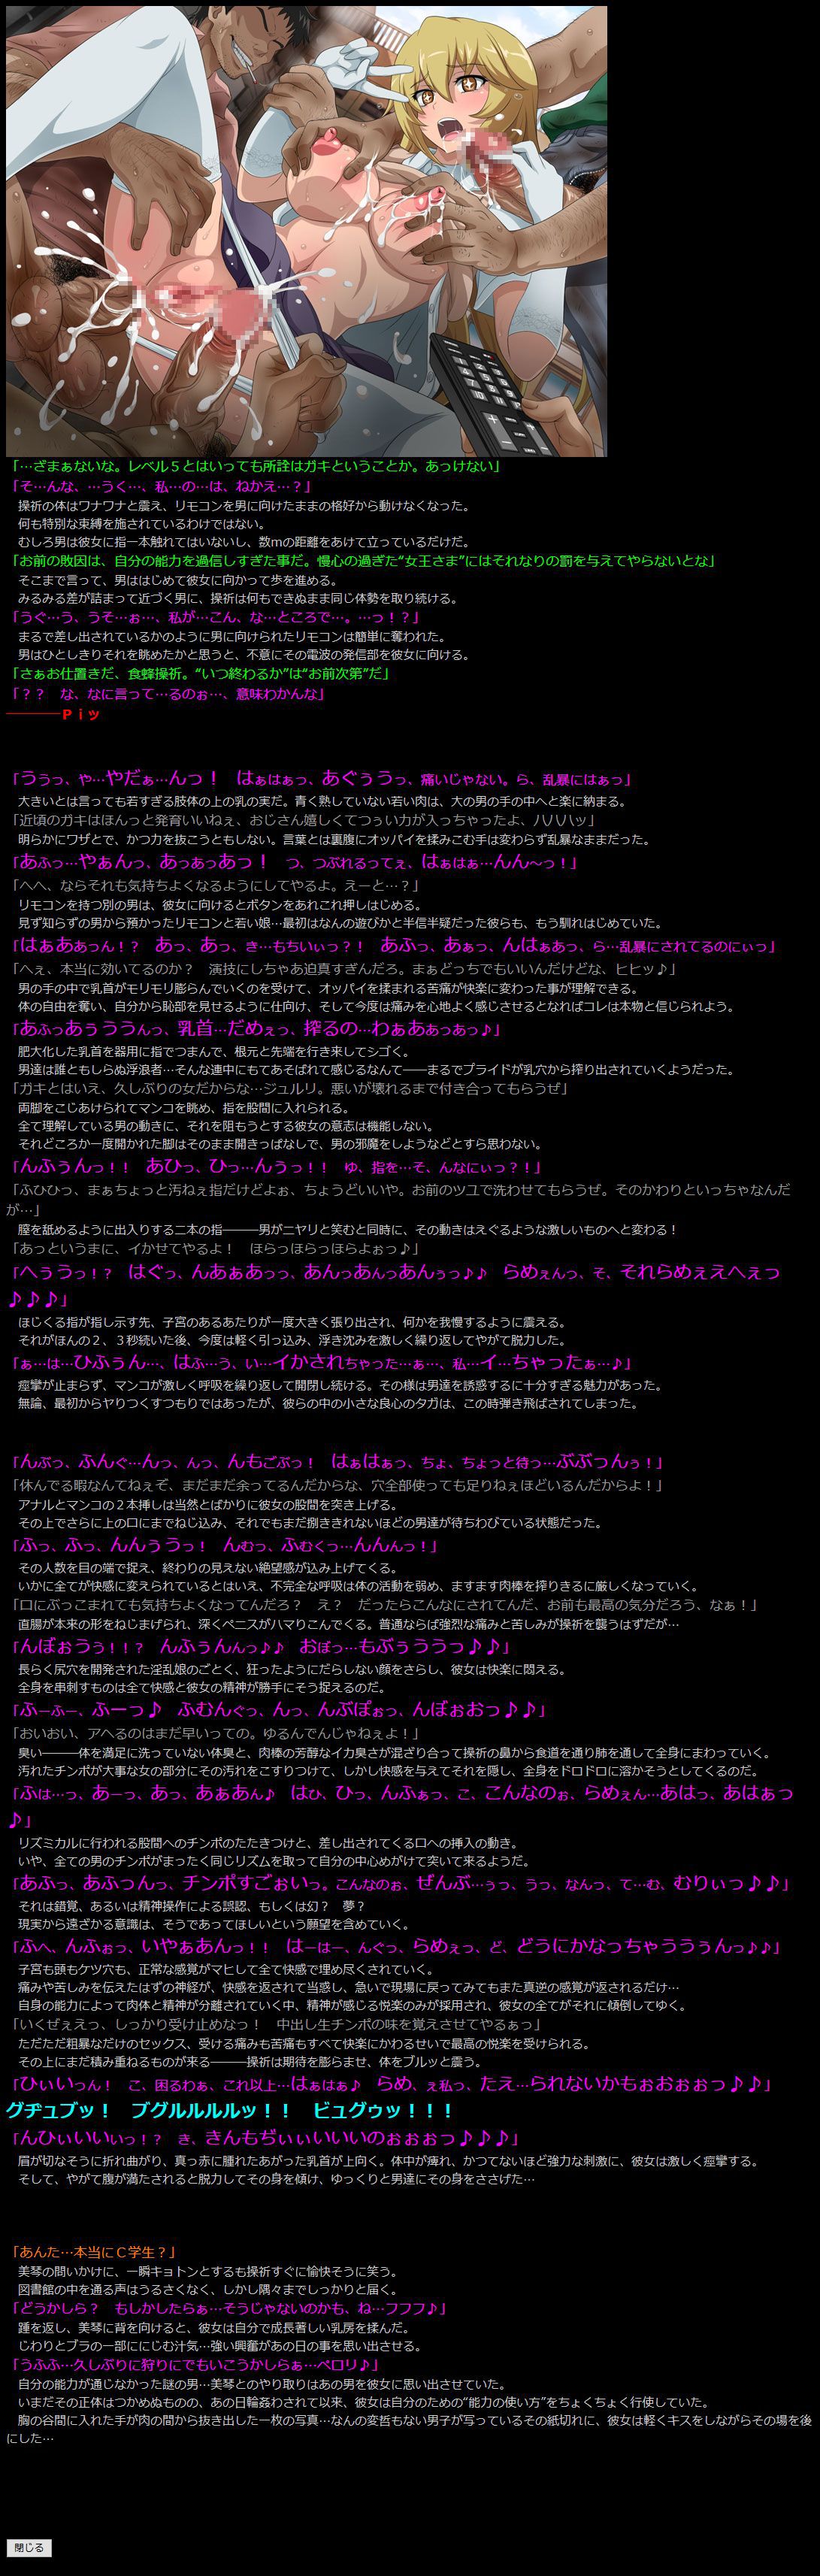 [LolitaChannel (Arigase Shinji)] Yuumei Chara Kannou Shousetsu CG Shuu No. 263!! Toaru Kagaku no Railgun S HaaHaa CG Shuu (Toaru Kagaku no Railgun S) [LolitaChannel (ありがせしんじ)] 有名キャラ官能小説CG集 第263弾 とあ○科学の超電磁砲SはぁはぁCG集 (とある科学の超電磁砲S) 5